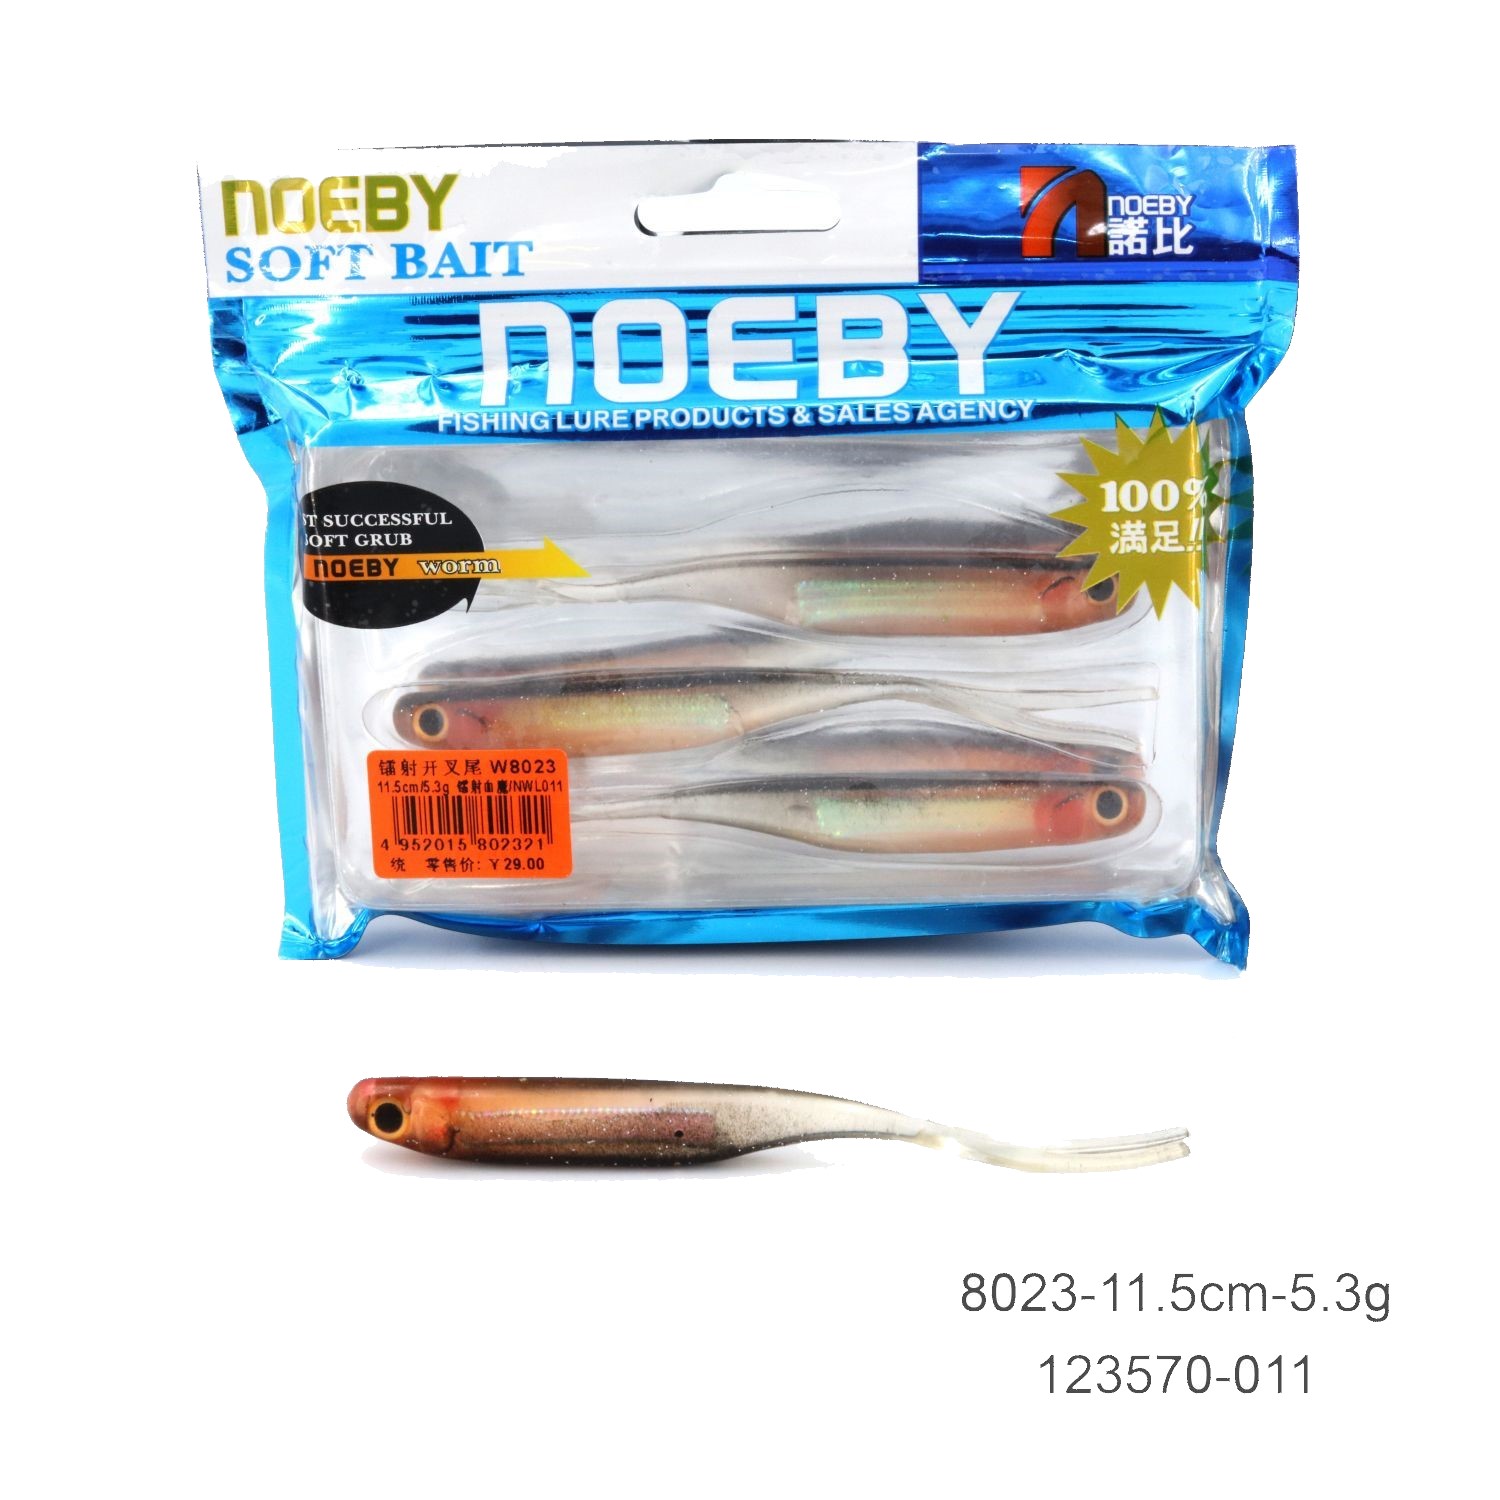 noeby fishing soft lure swimbait-5.3g